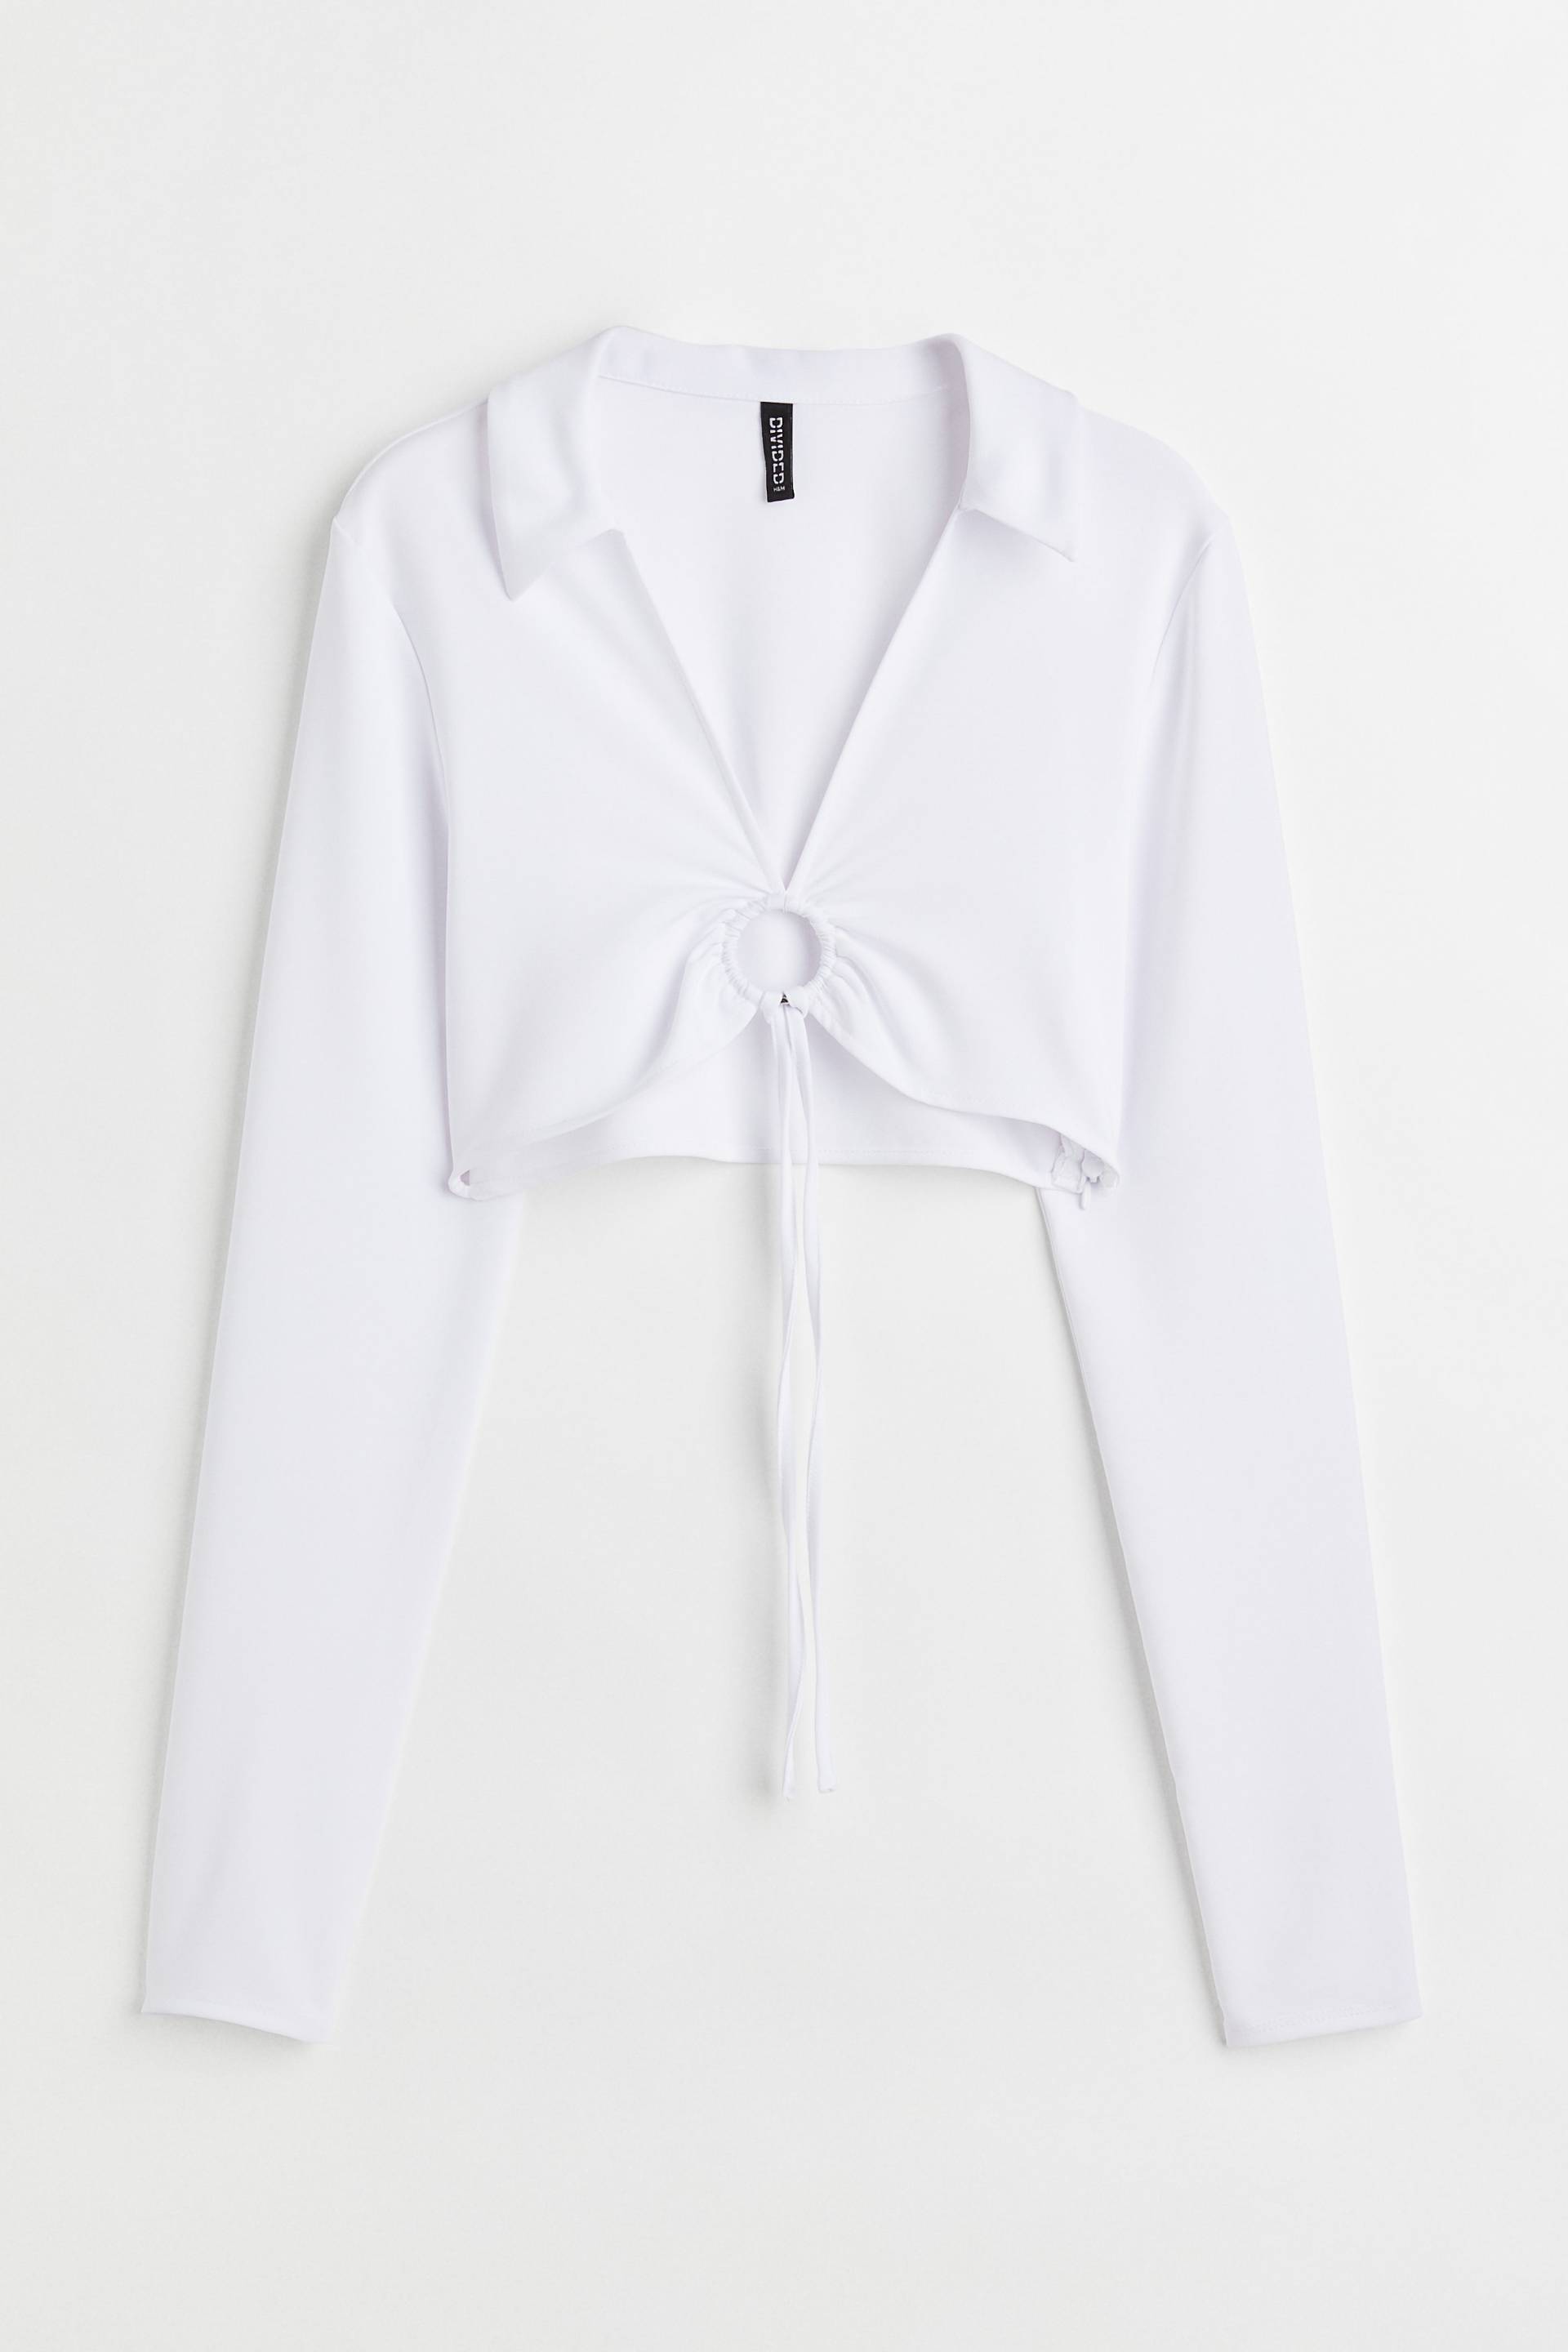 H&M Cropped Shirt mit Kragen Weiß, Tops in Größe 46. Farbe: White von H&M